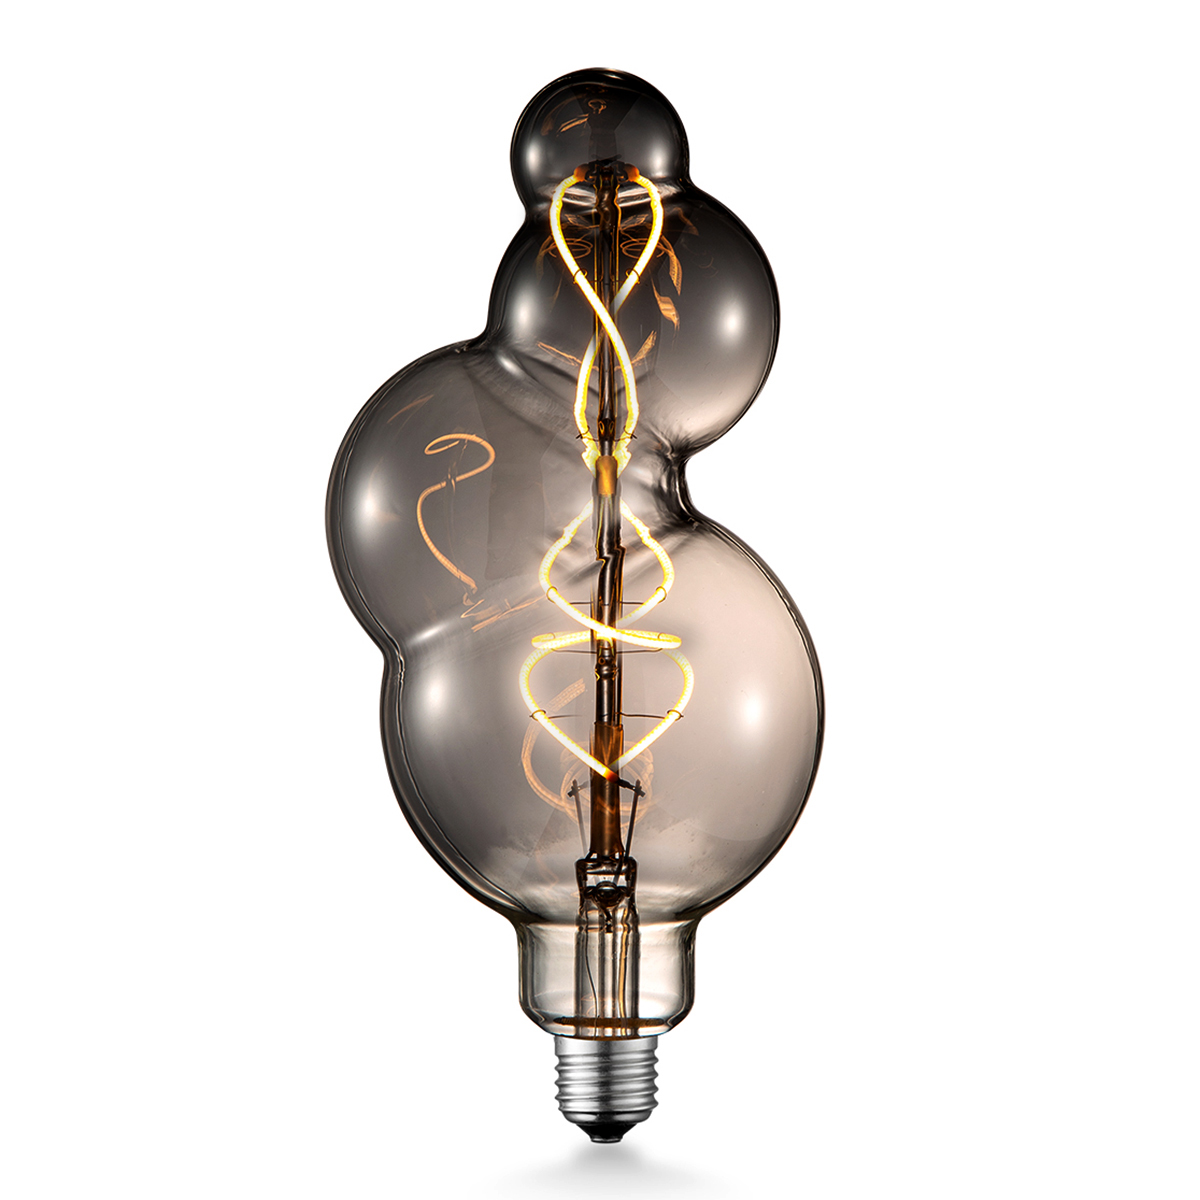 Tangla lighting - TLB-8051-06TM - LED Light Bulb Double Spiral filament - special 4W titanium - medium - Fibonacci - dimmable - E27